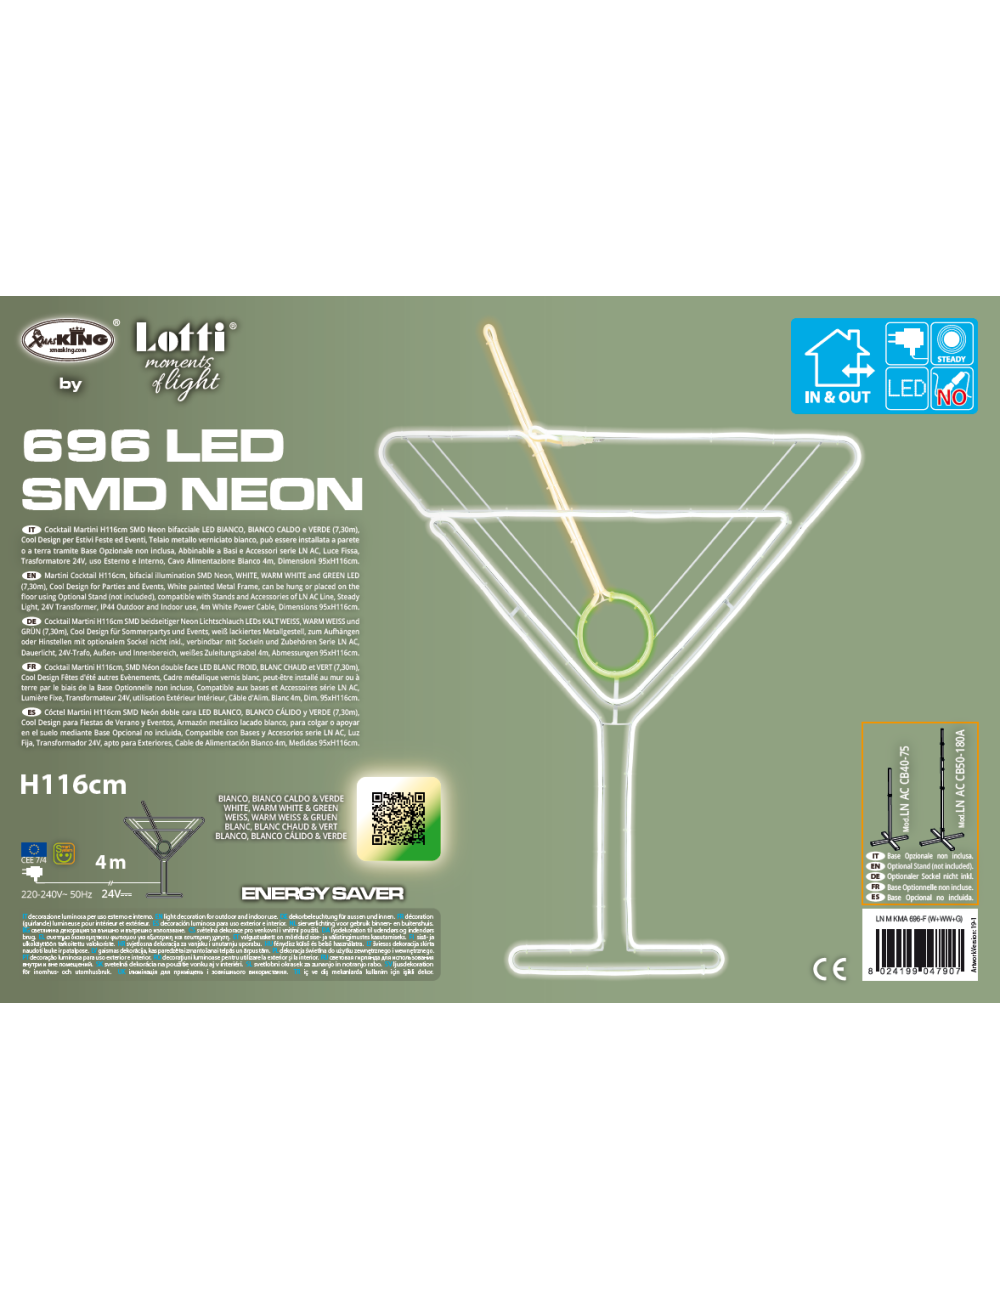 Lotti Cocktail Martini SMD Neon Bifacciale Led Bianco Caldo e Verde (7,30m) 4m+95xH116cm con Base Stand - Decorazione Giardino